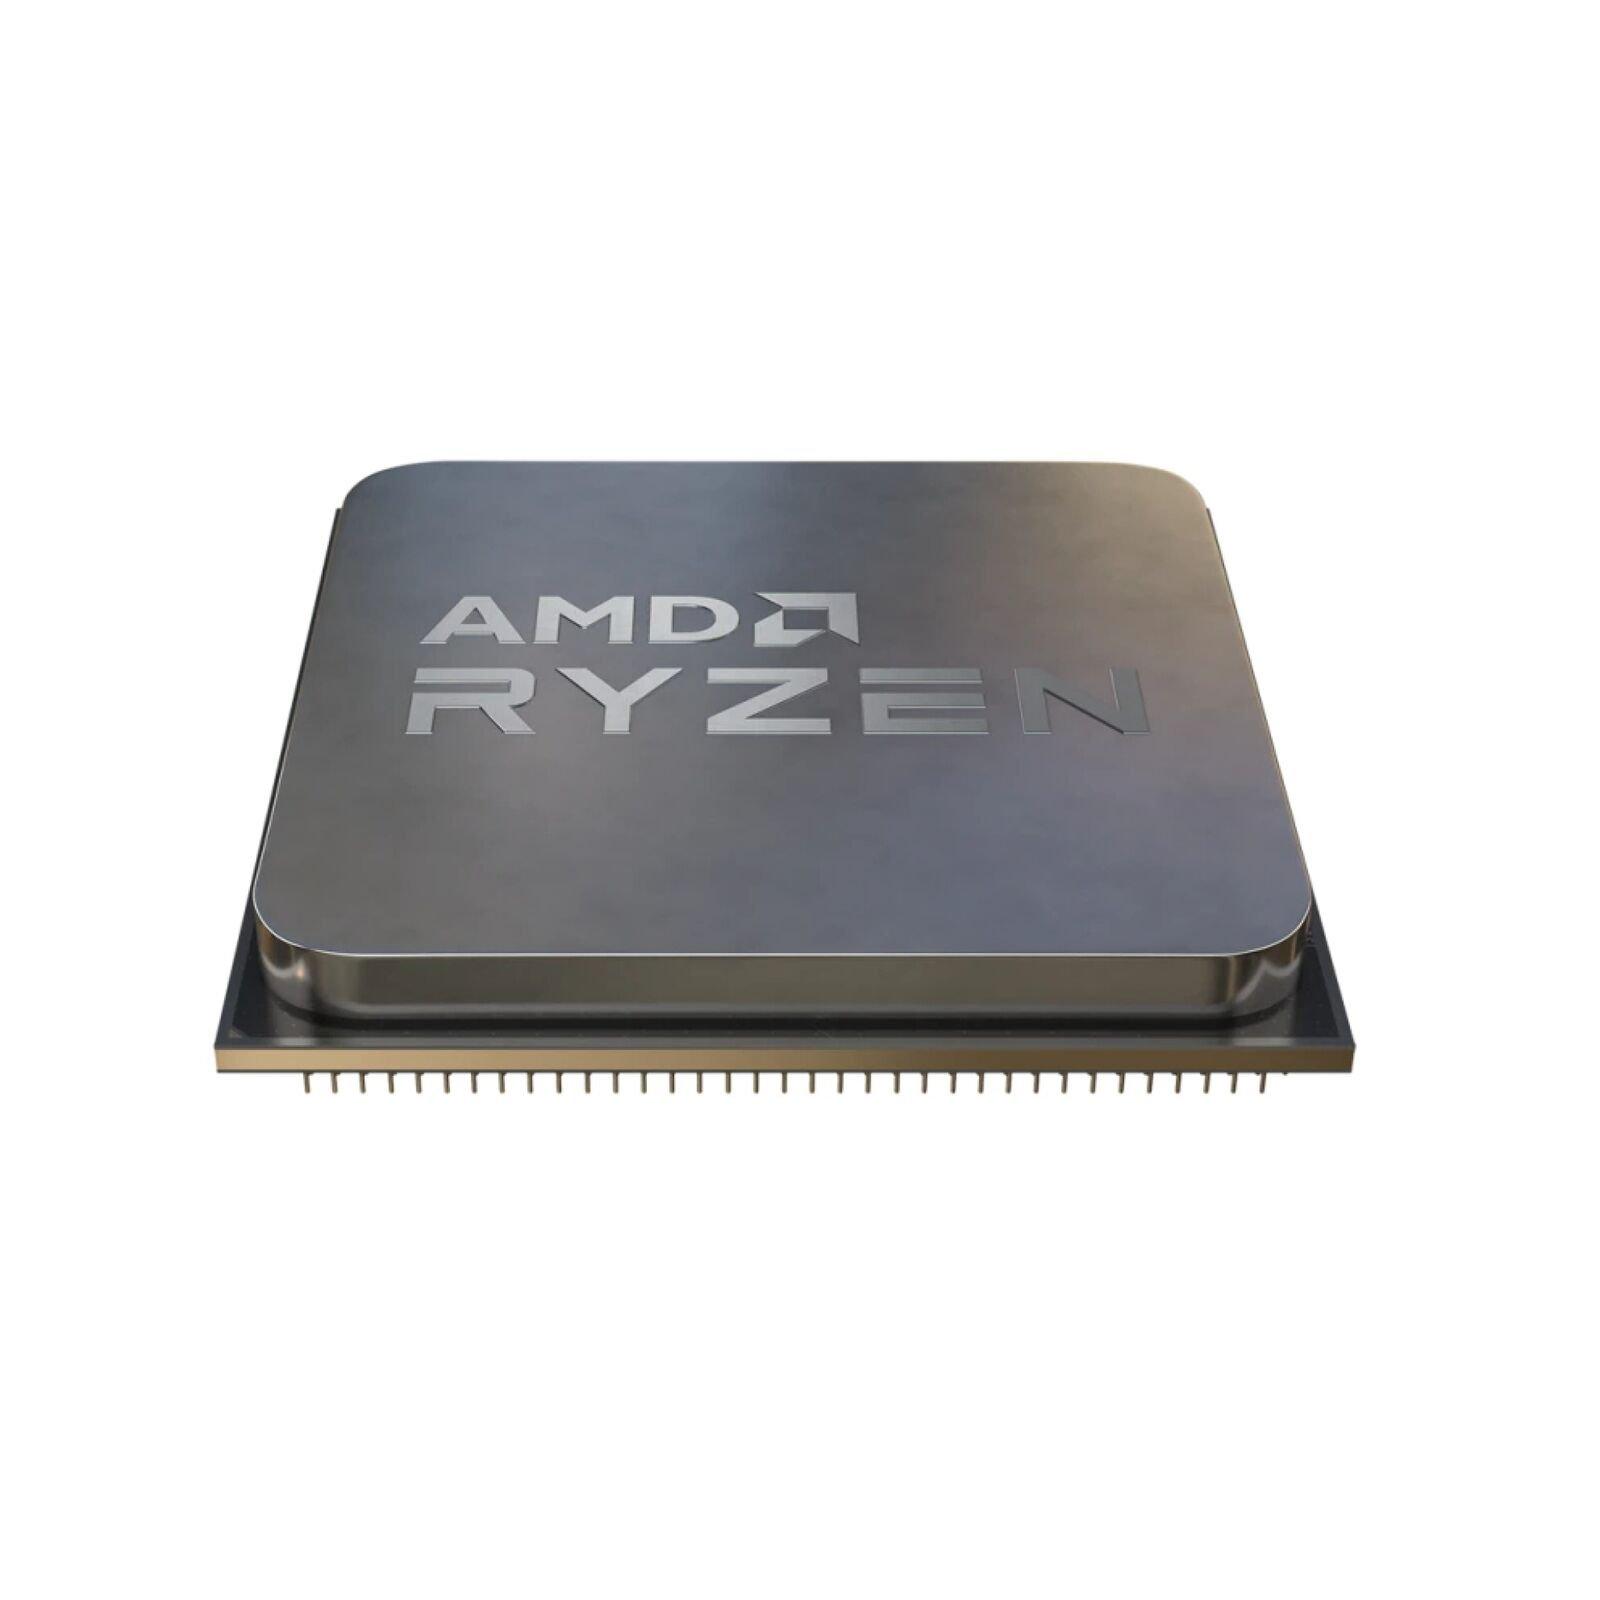 AMD – CPU Ryzen 5 2600, processeur 6 cœurs, 12 threads, fréquence